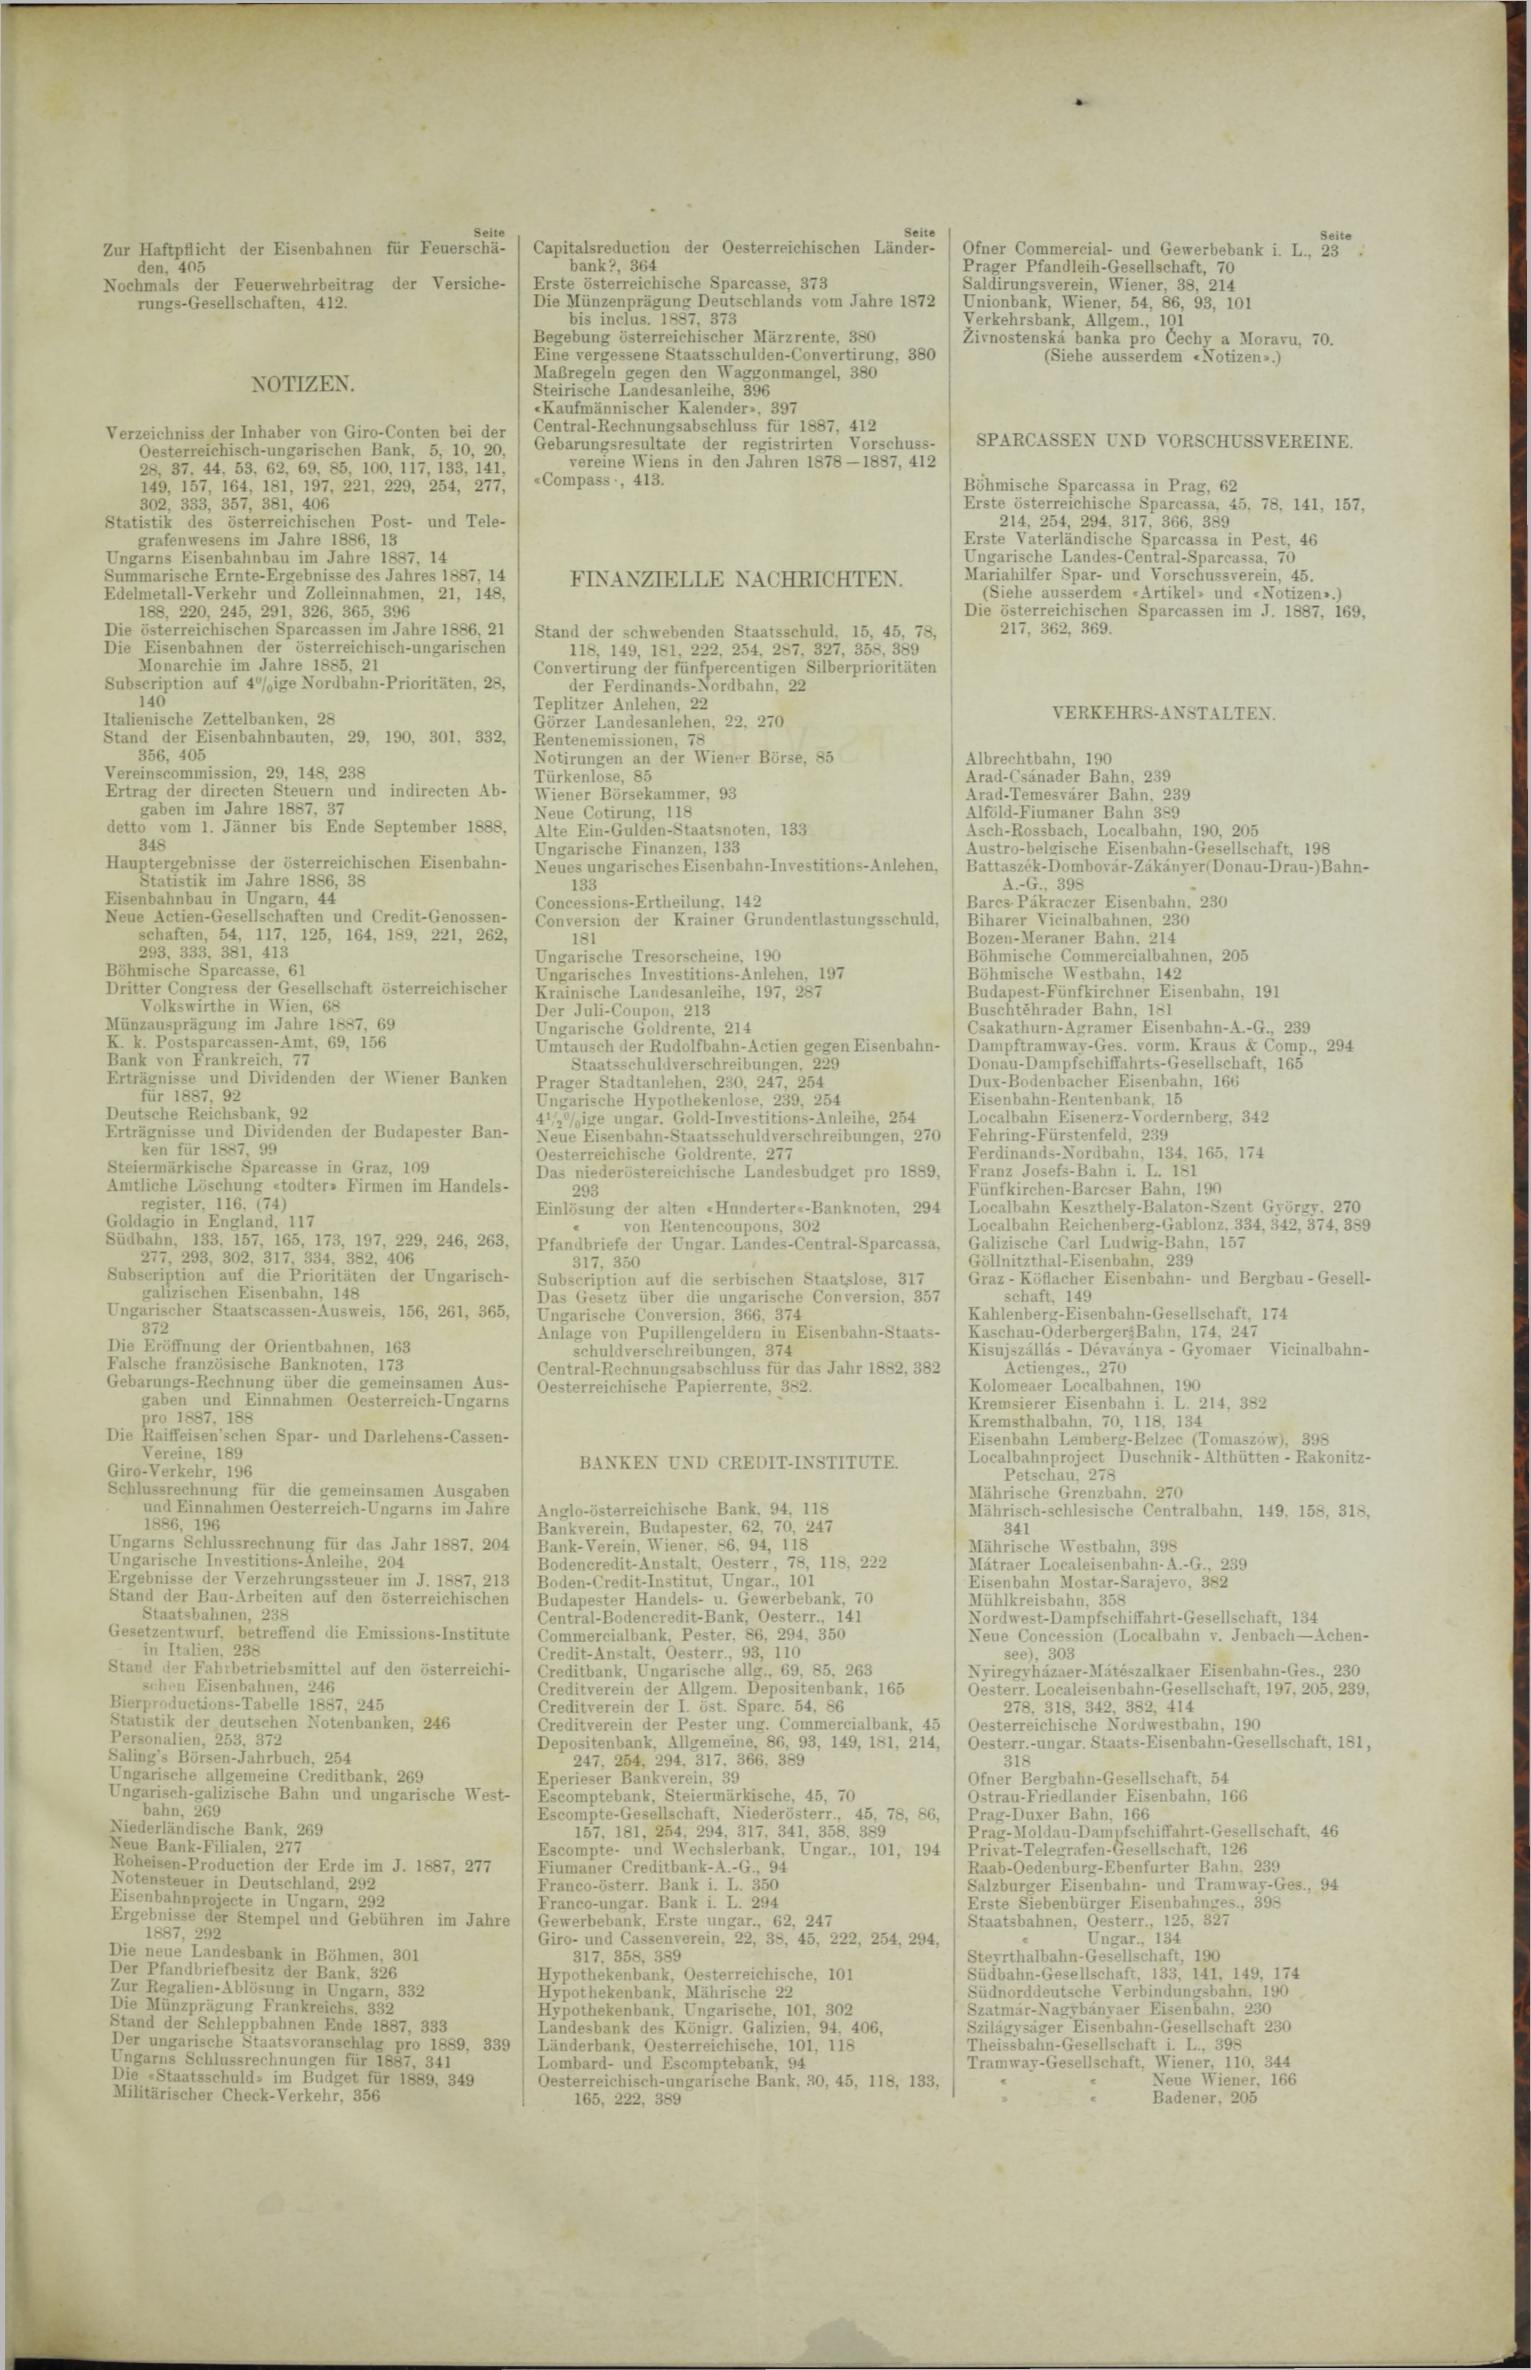 Der Tresor 01.03.1888 - Seite 11